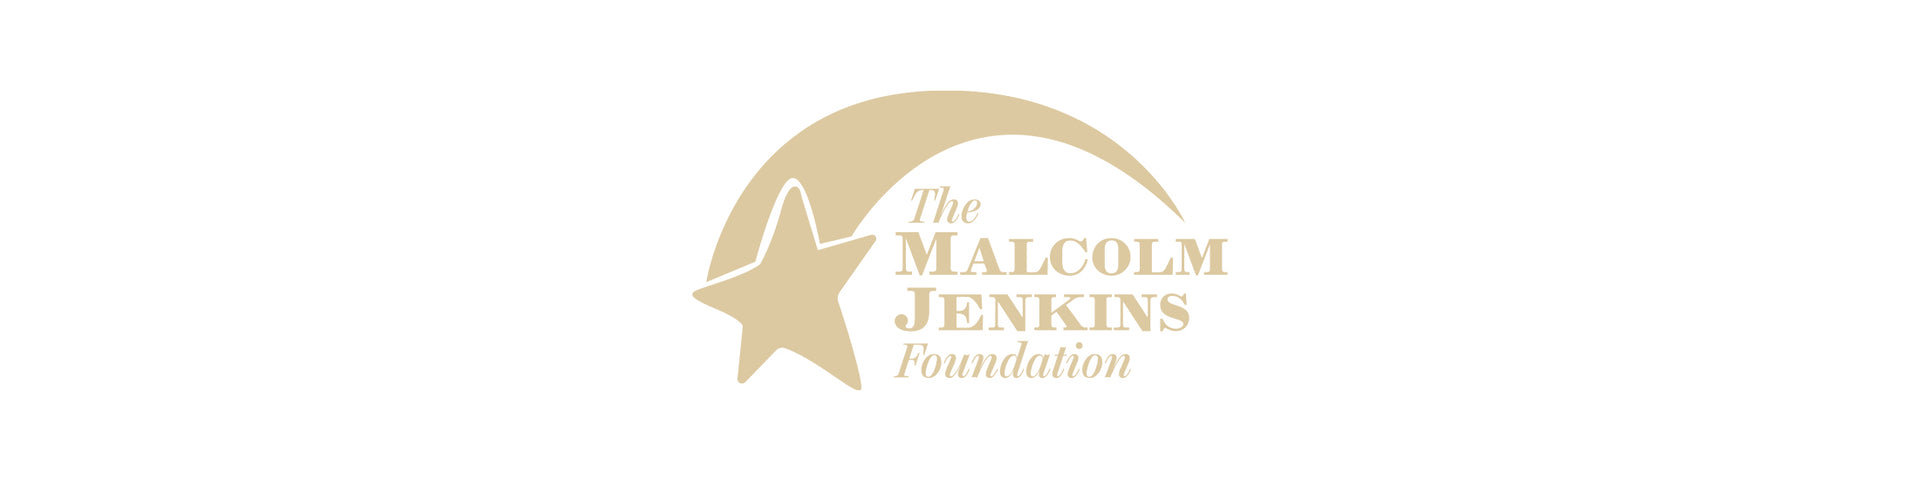 Malcolm Jenkins Foundation